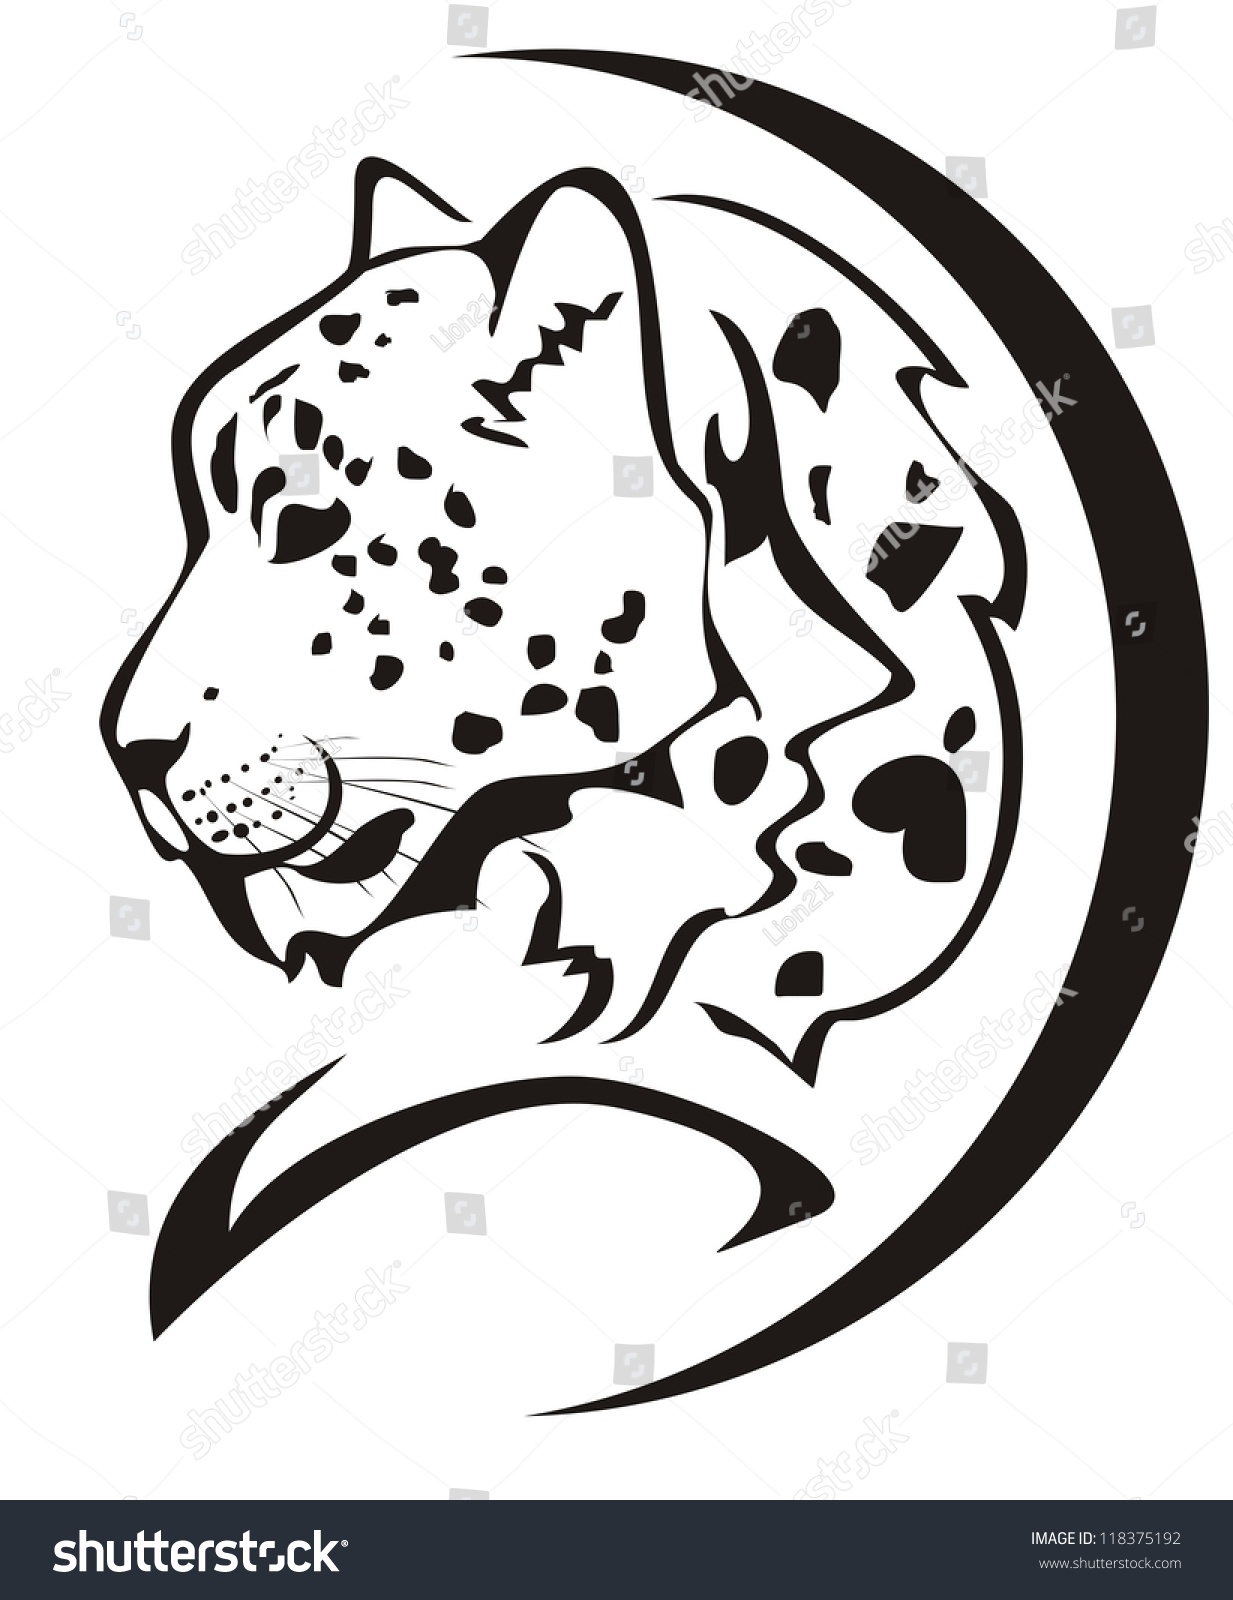 snow leopard clipart - photo #49